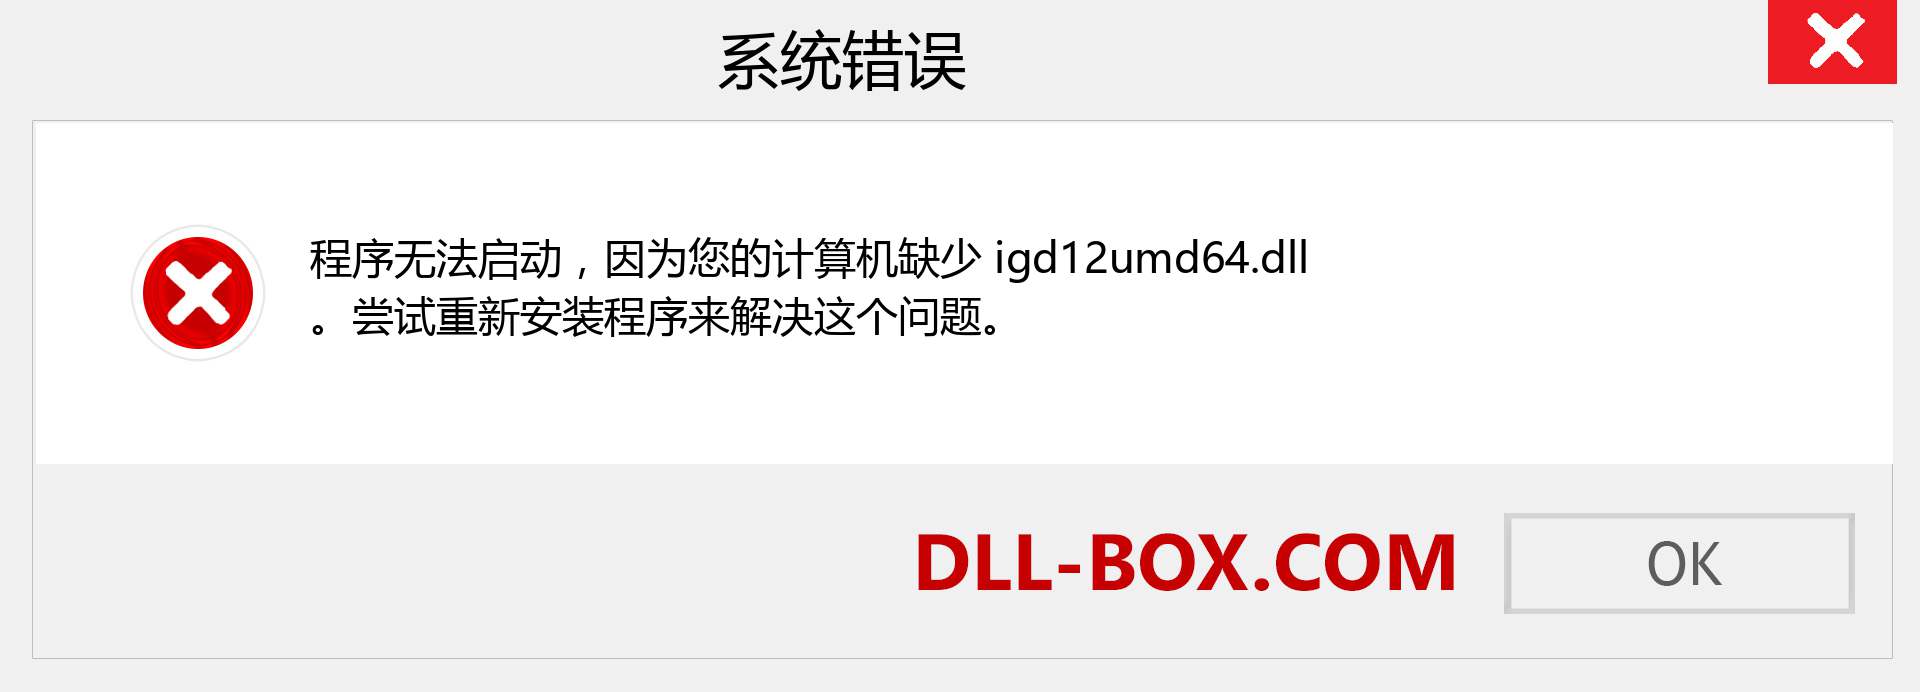 igd12umd64.dll 文件丢失？。 适用于 Windows 7、8、10 的下载 - 修复 Windows、照片、图像上的 igd12umd64 dll 丢失错误